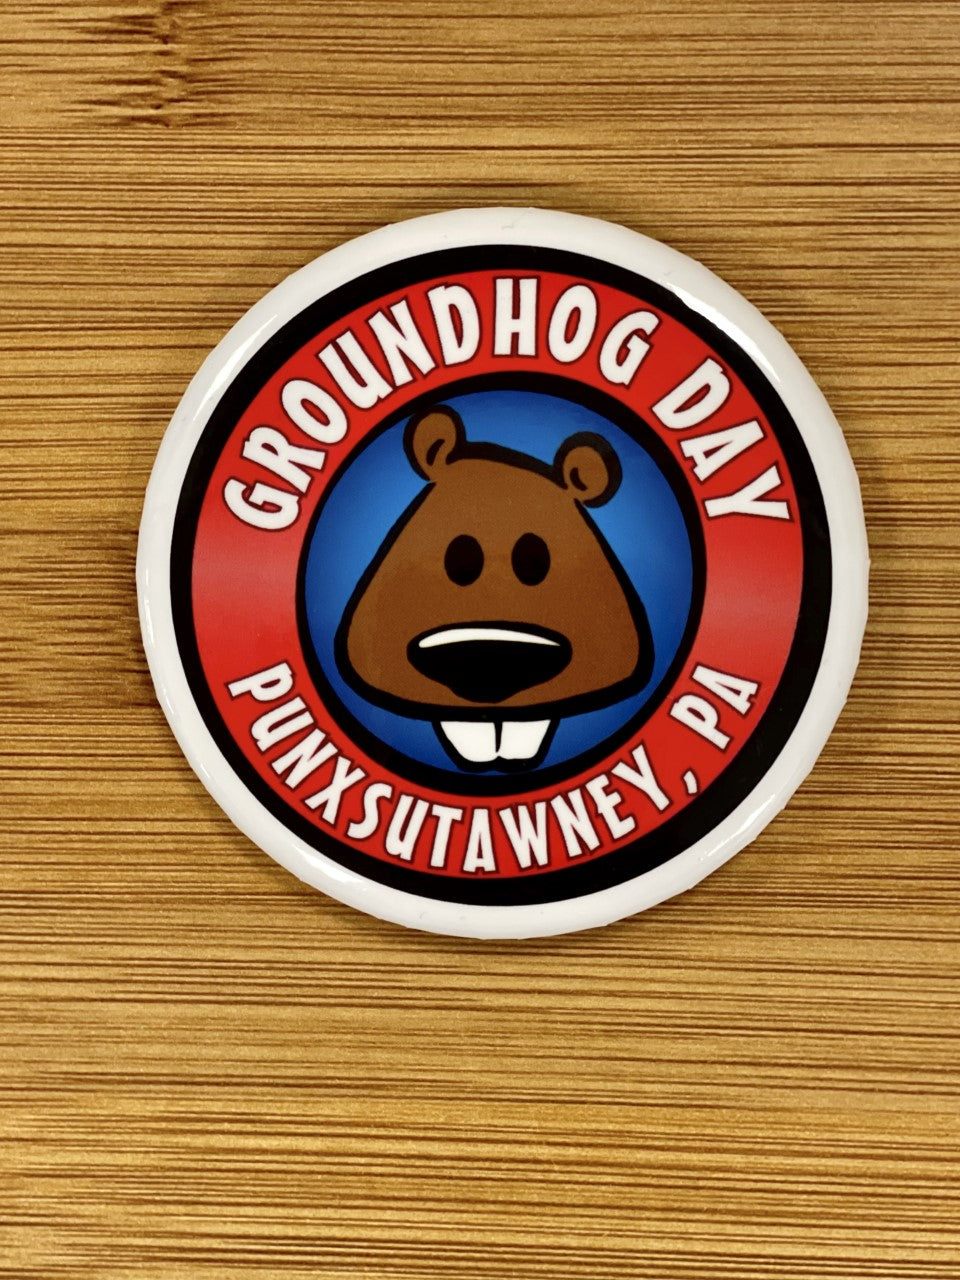 Groundhog Day Button